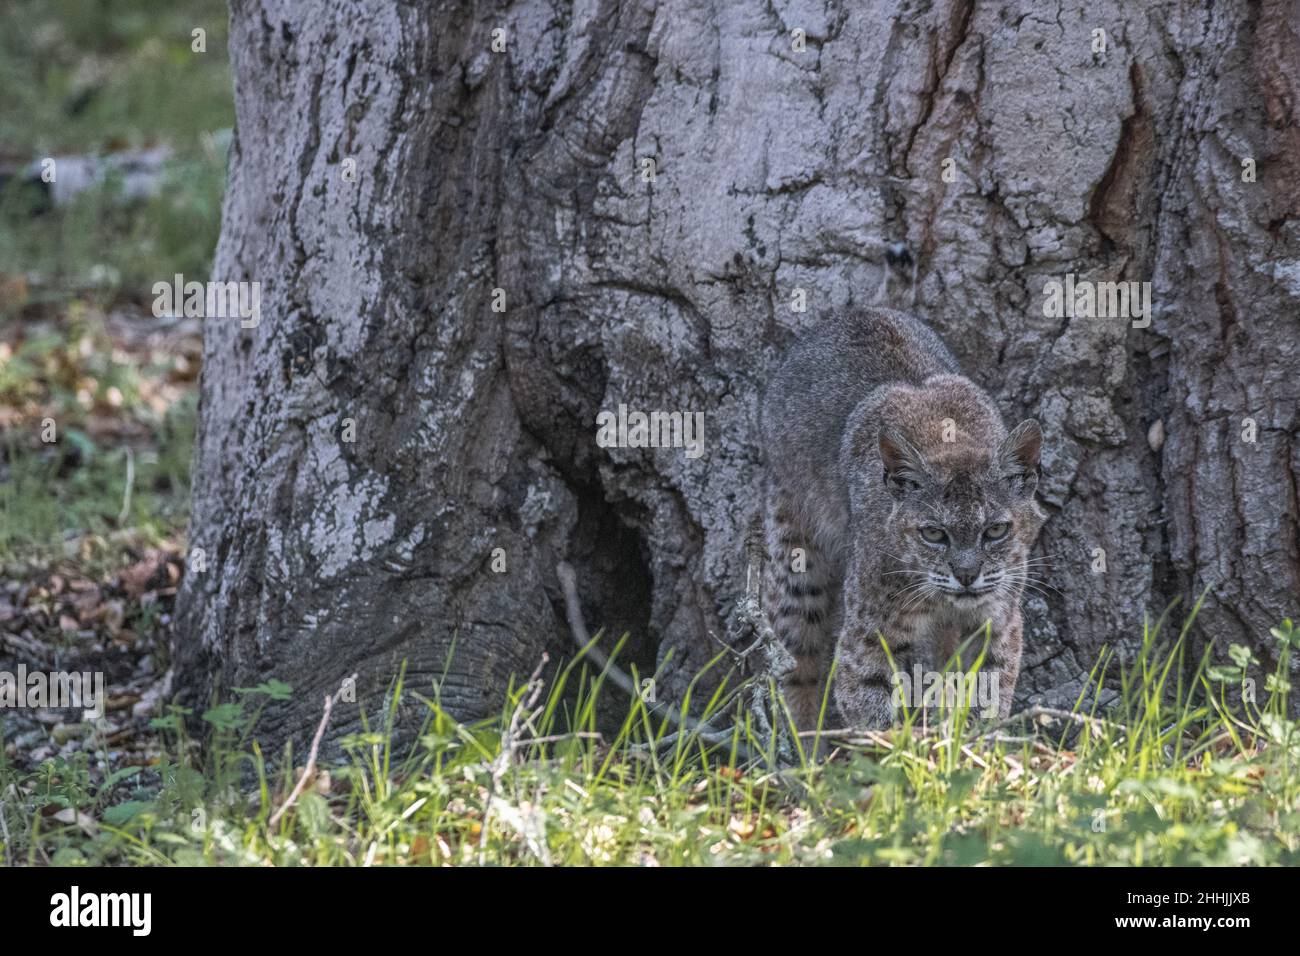 Eine wilde Bobkatze (Lynx rufus) fügt sich sehr gut in die Umgebung ein und zeigt ihre ausgezeichnete Tarnung. In Kalifornien, USA. Stockfoto